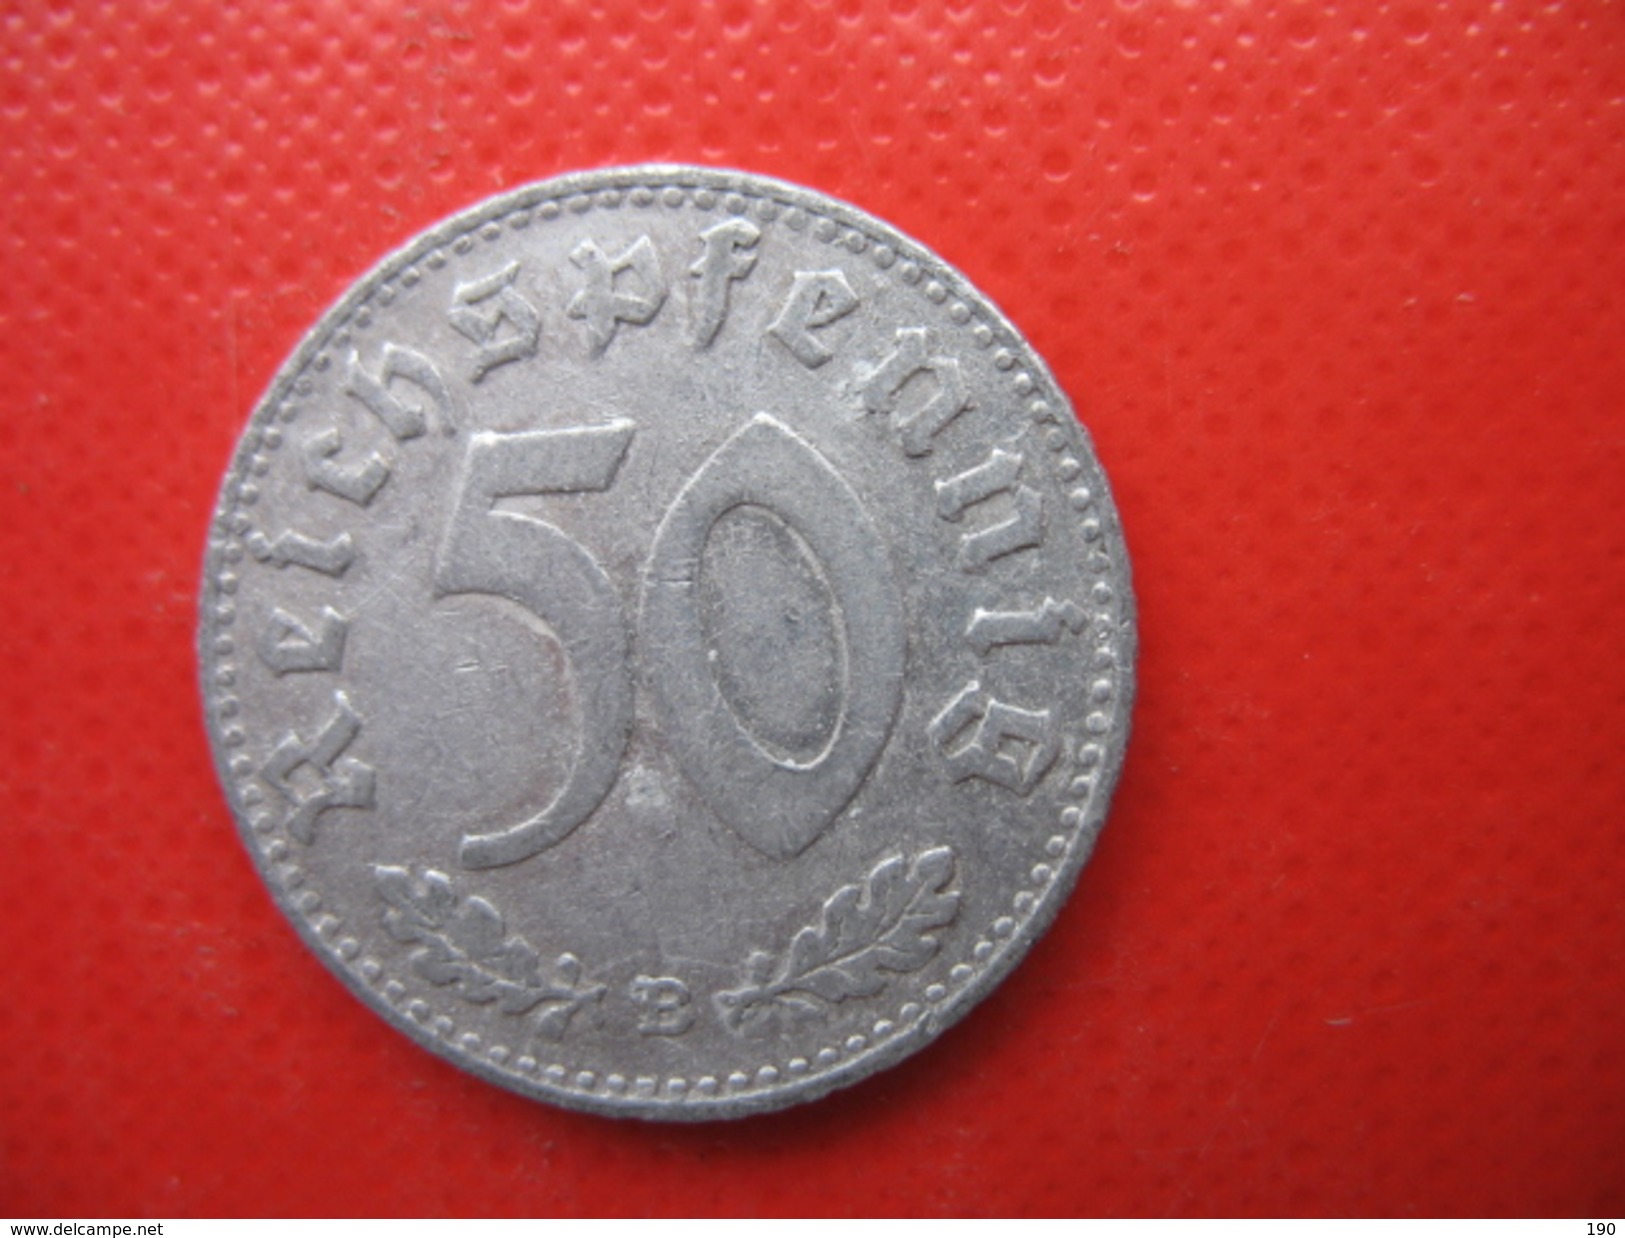 50 REICHSPFENNIG - 50 Reichspfennig